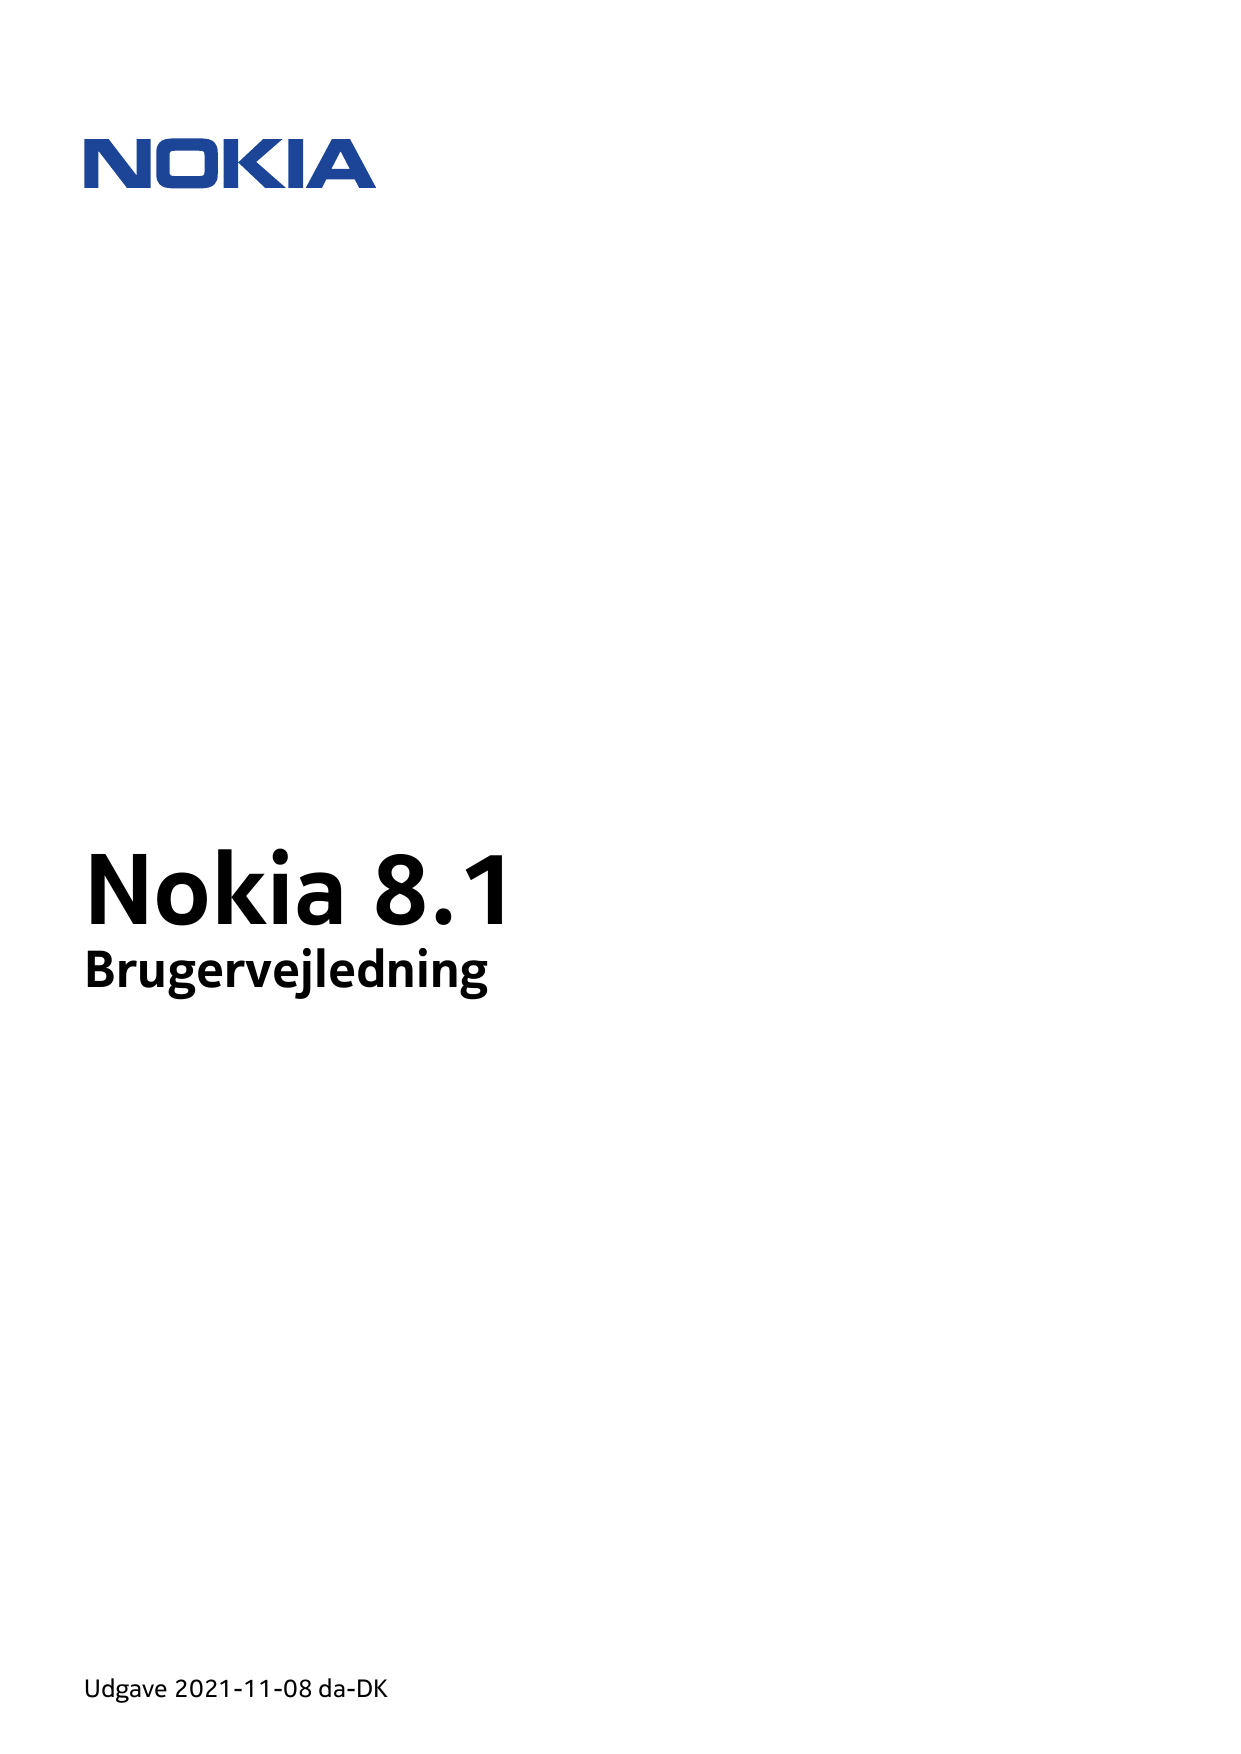 Nokia 8.1BrugervejledningUdgave 2021-11-08 da-DK